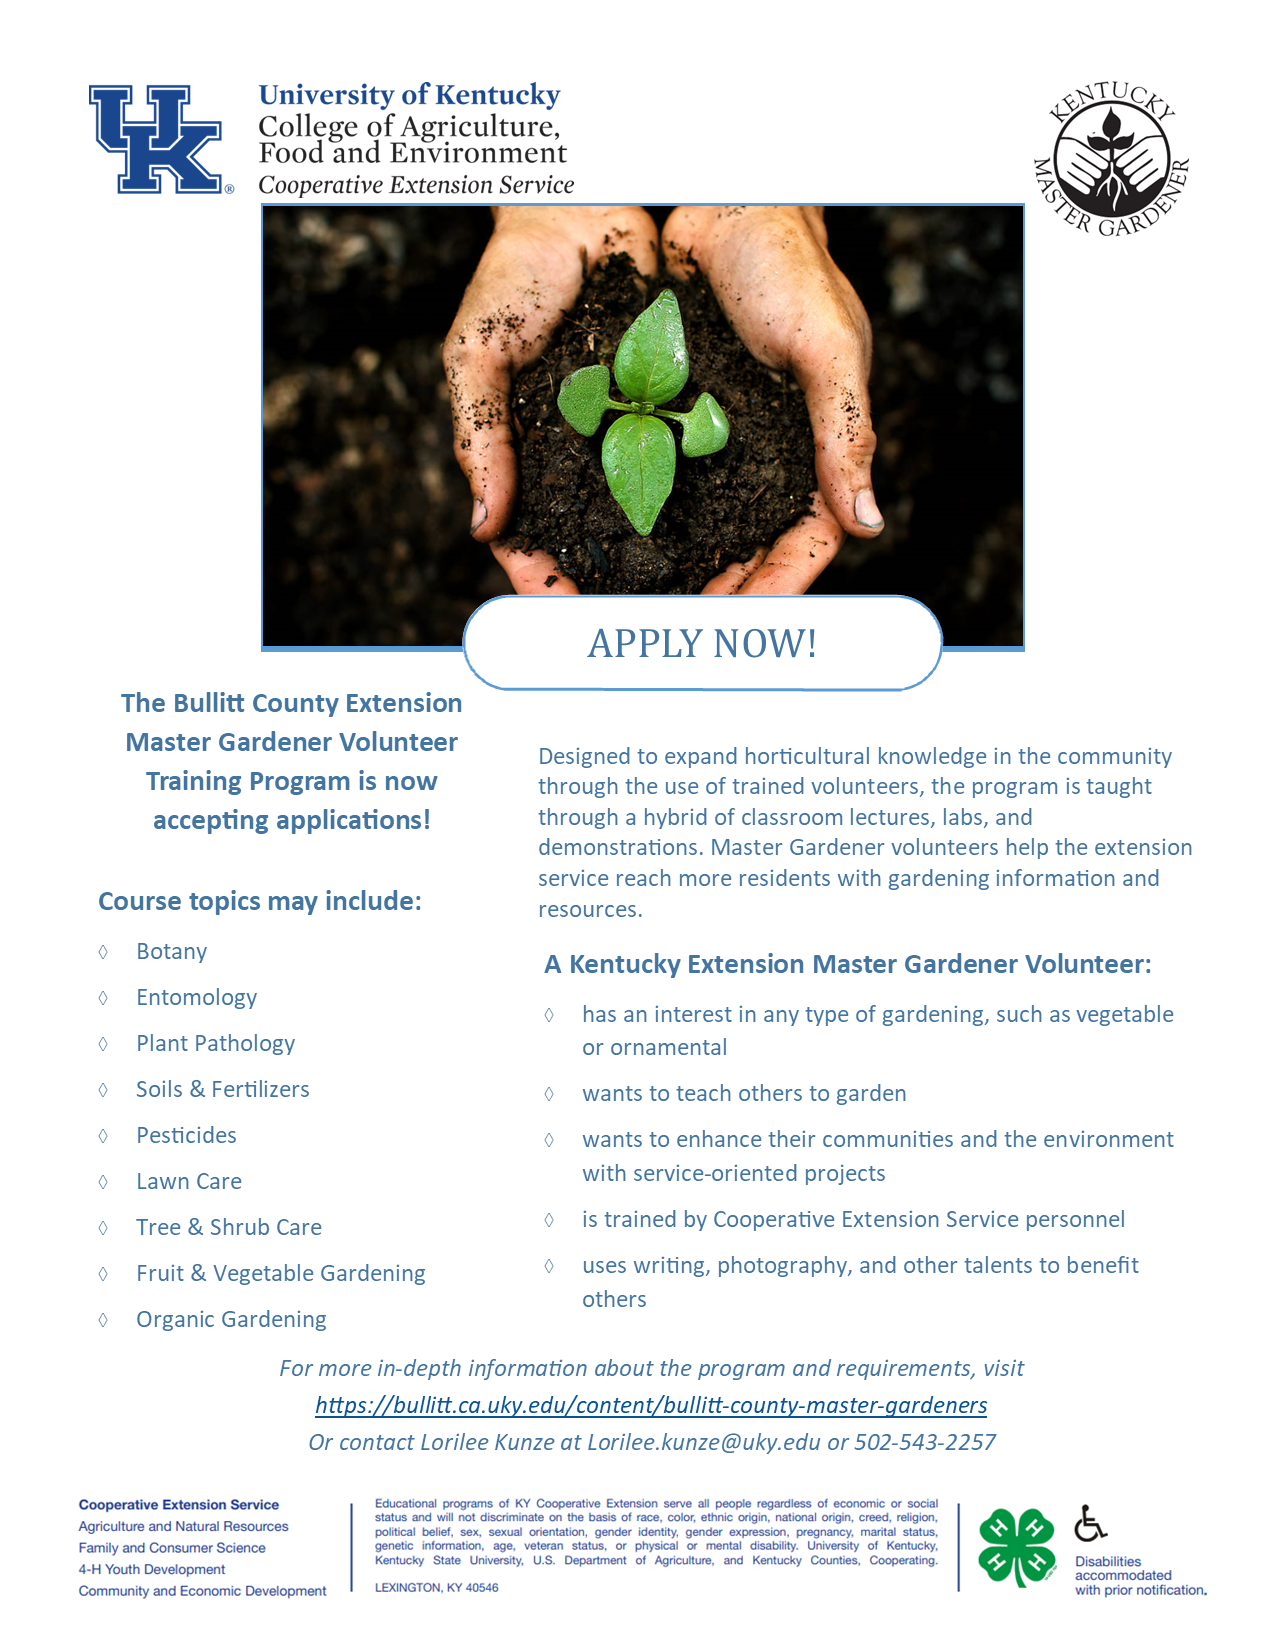 The Bullitt County Master Gardener program is now accepting application